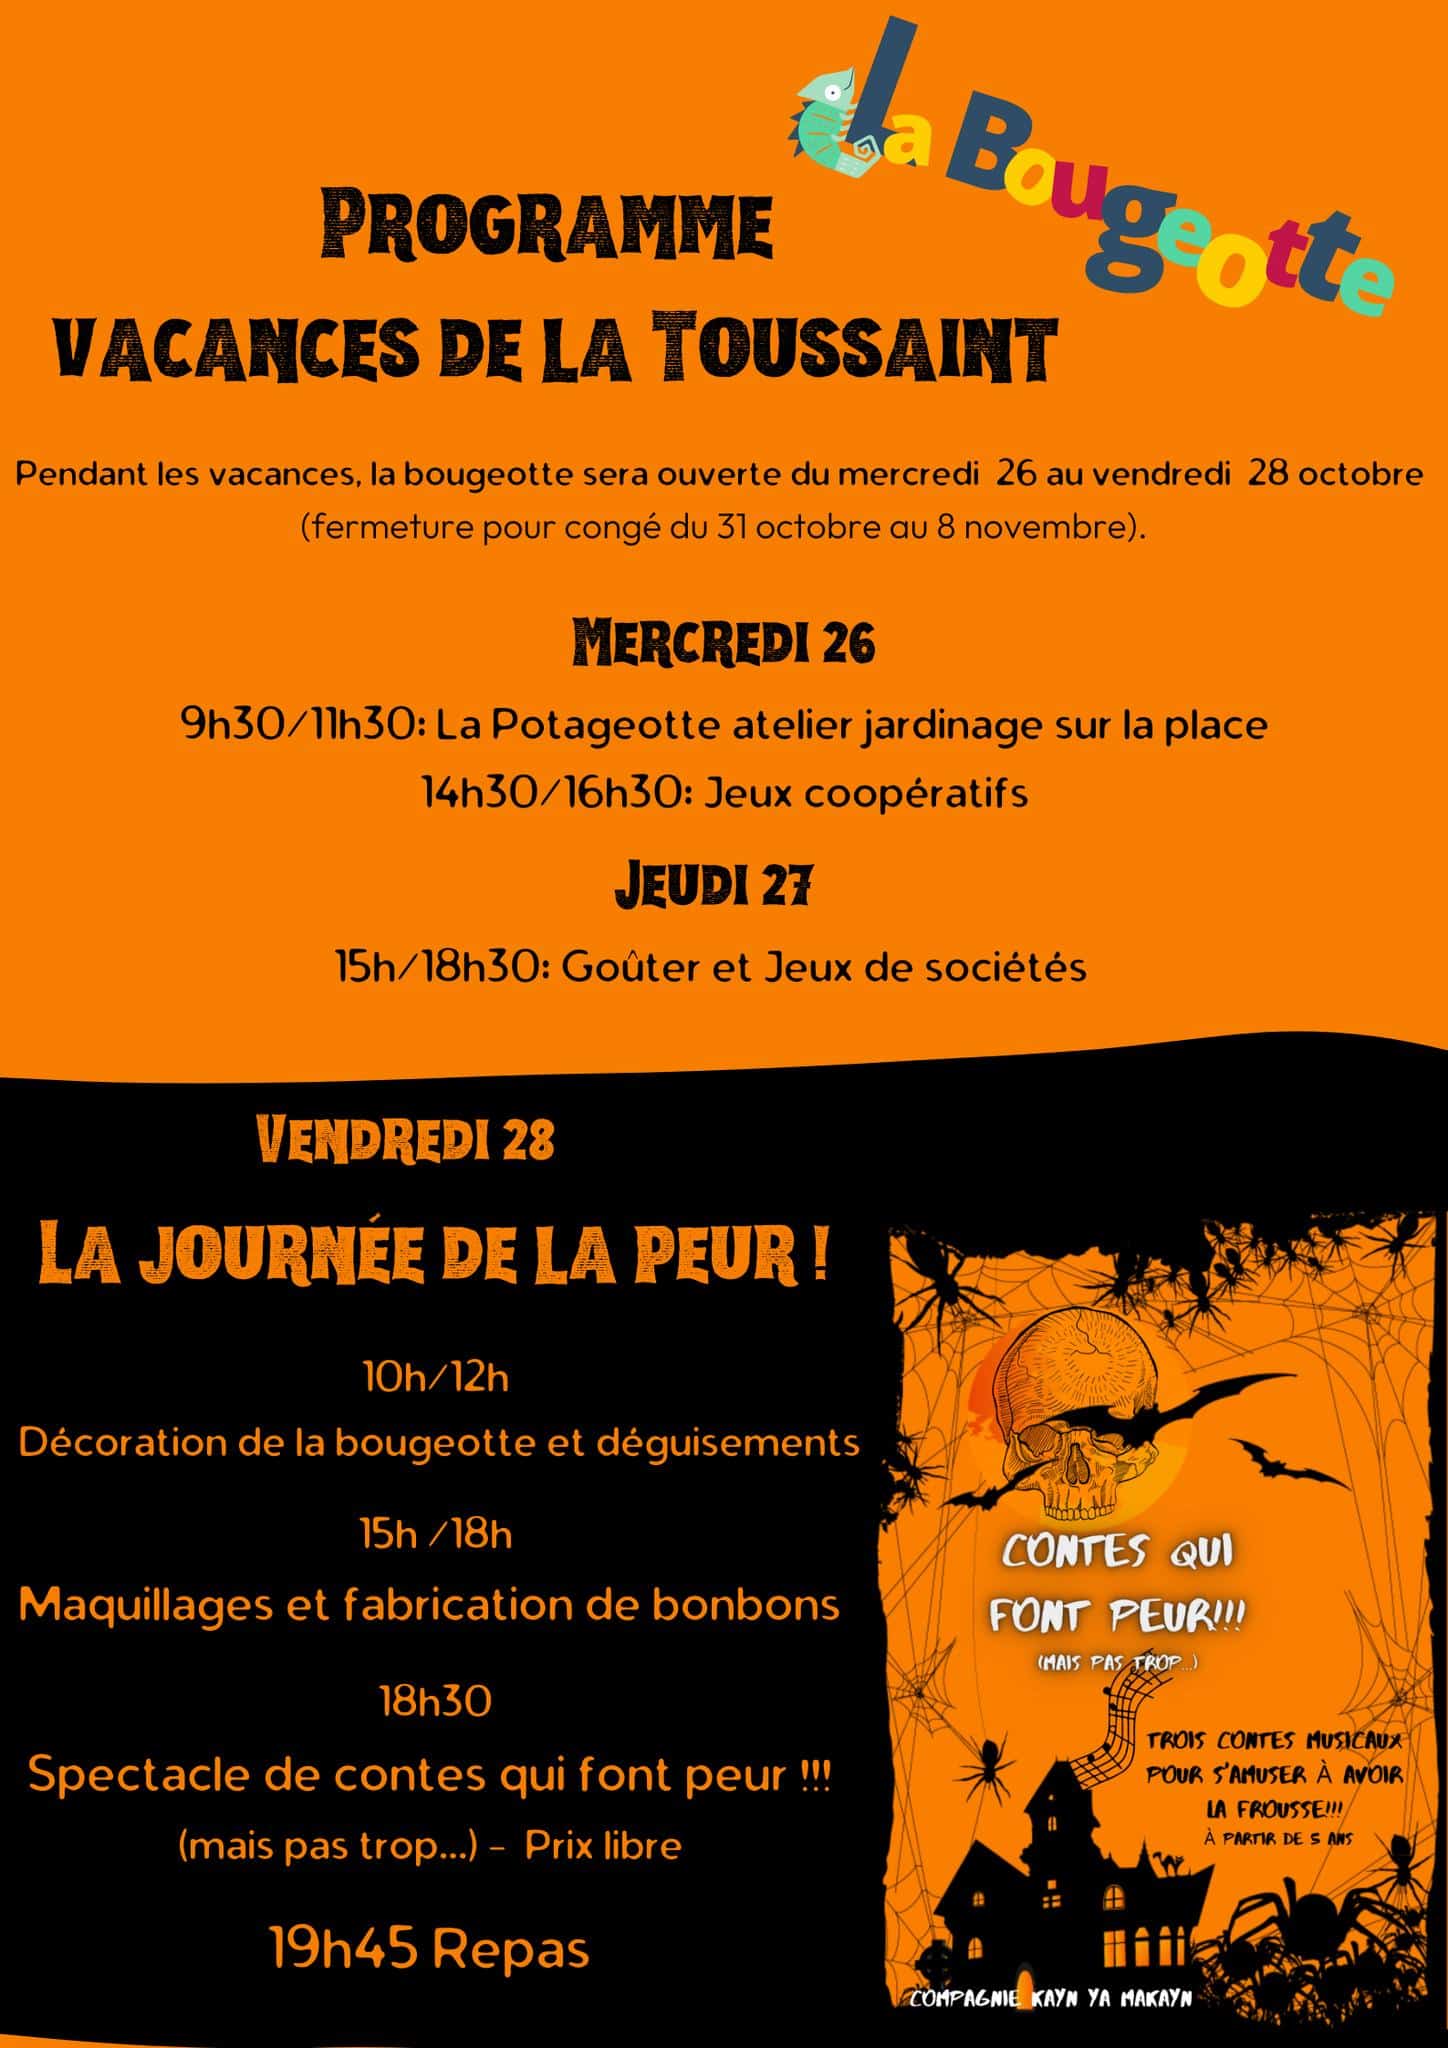 Vacances de la Toussaint – Programme